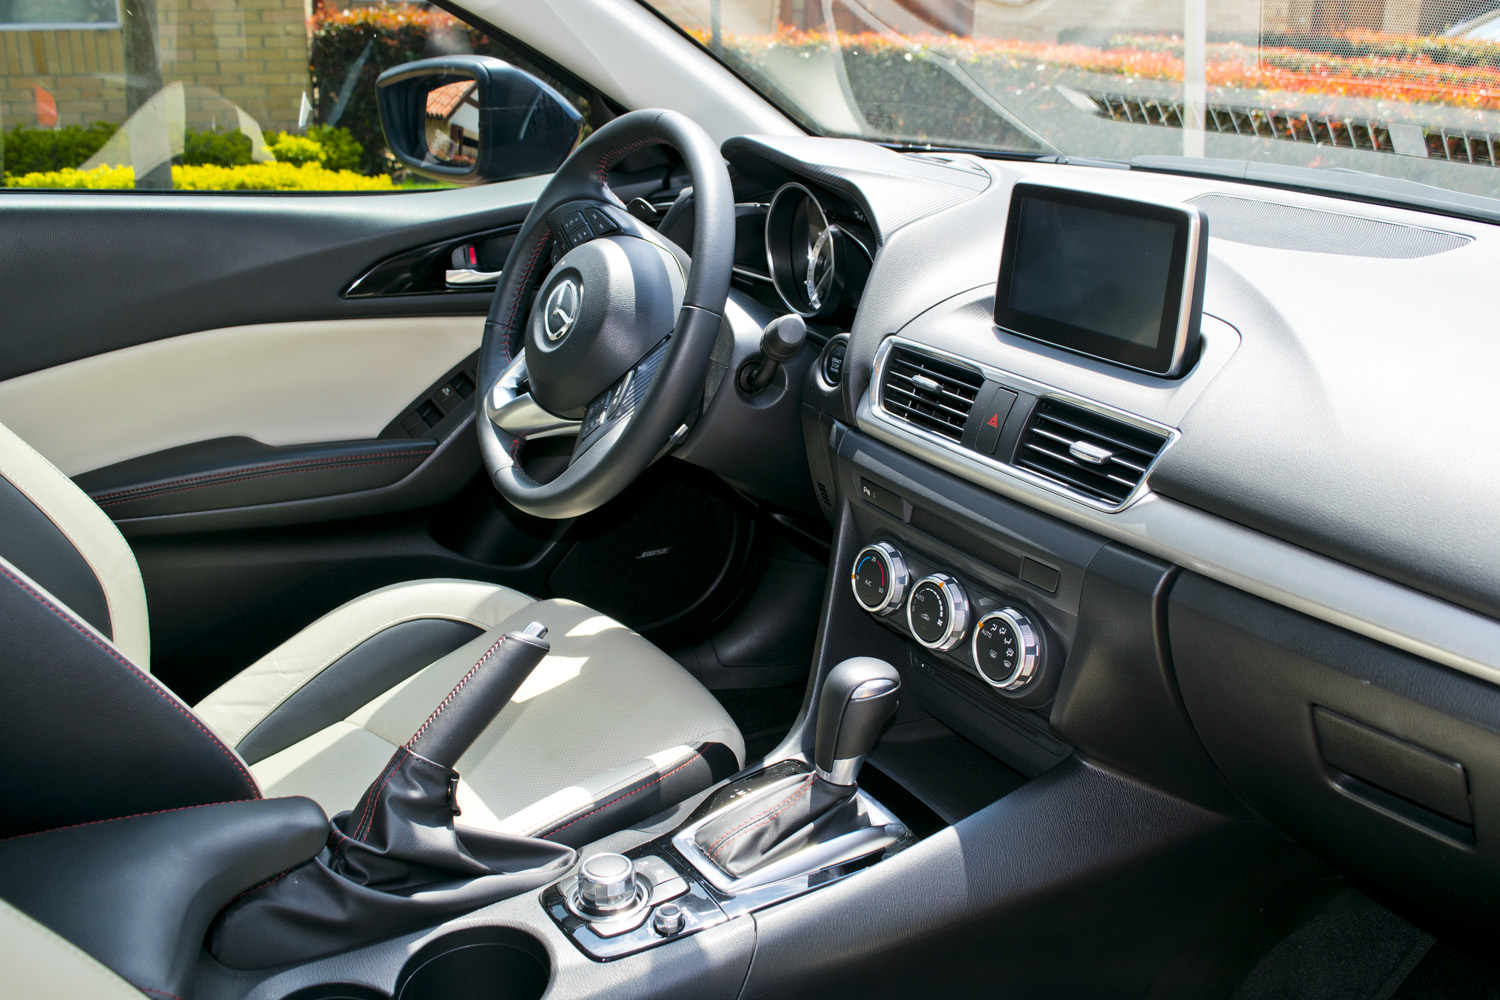 Mazda 3 Grand Touring 2016 - Parte 1 - Interior, aerodinámica y seguridad